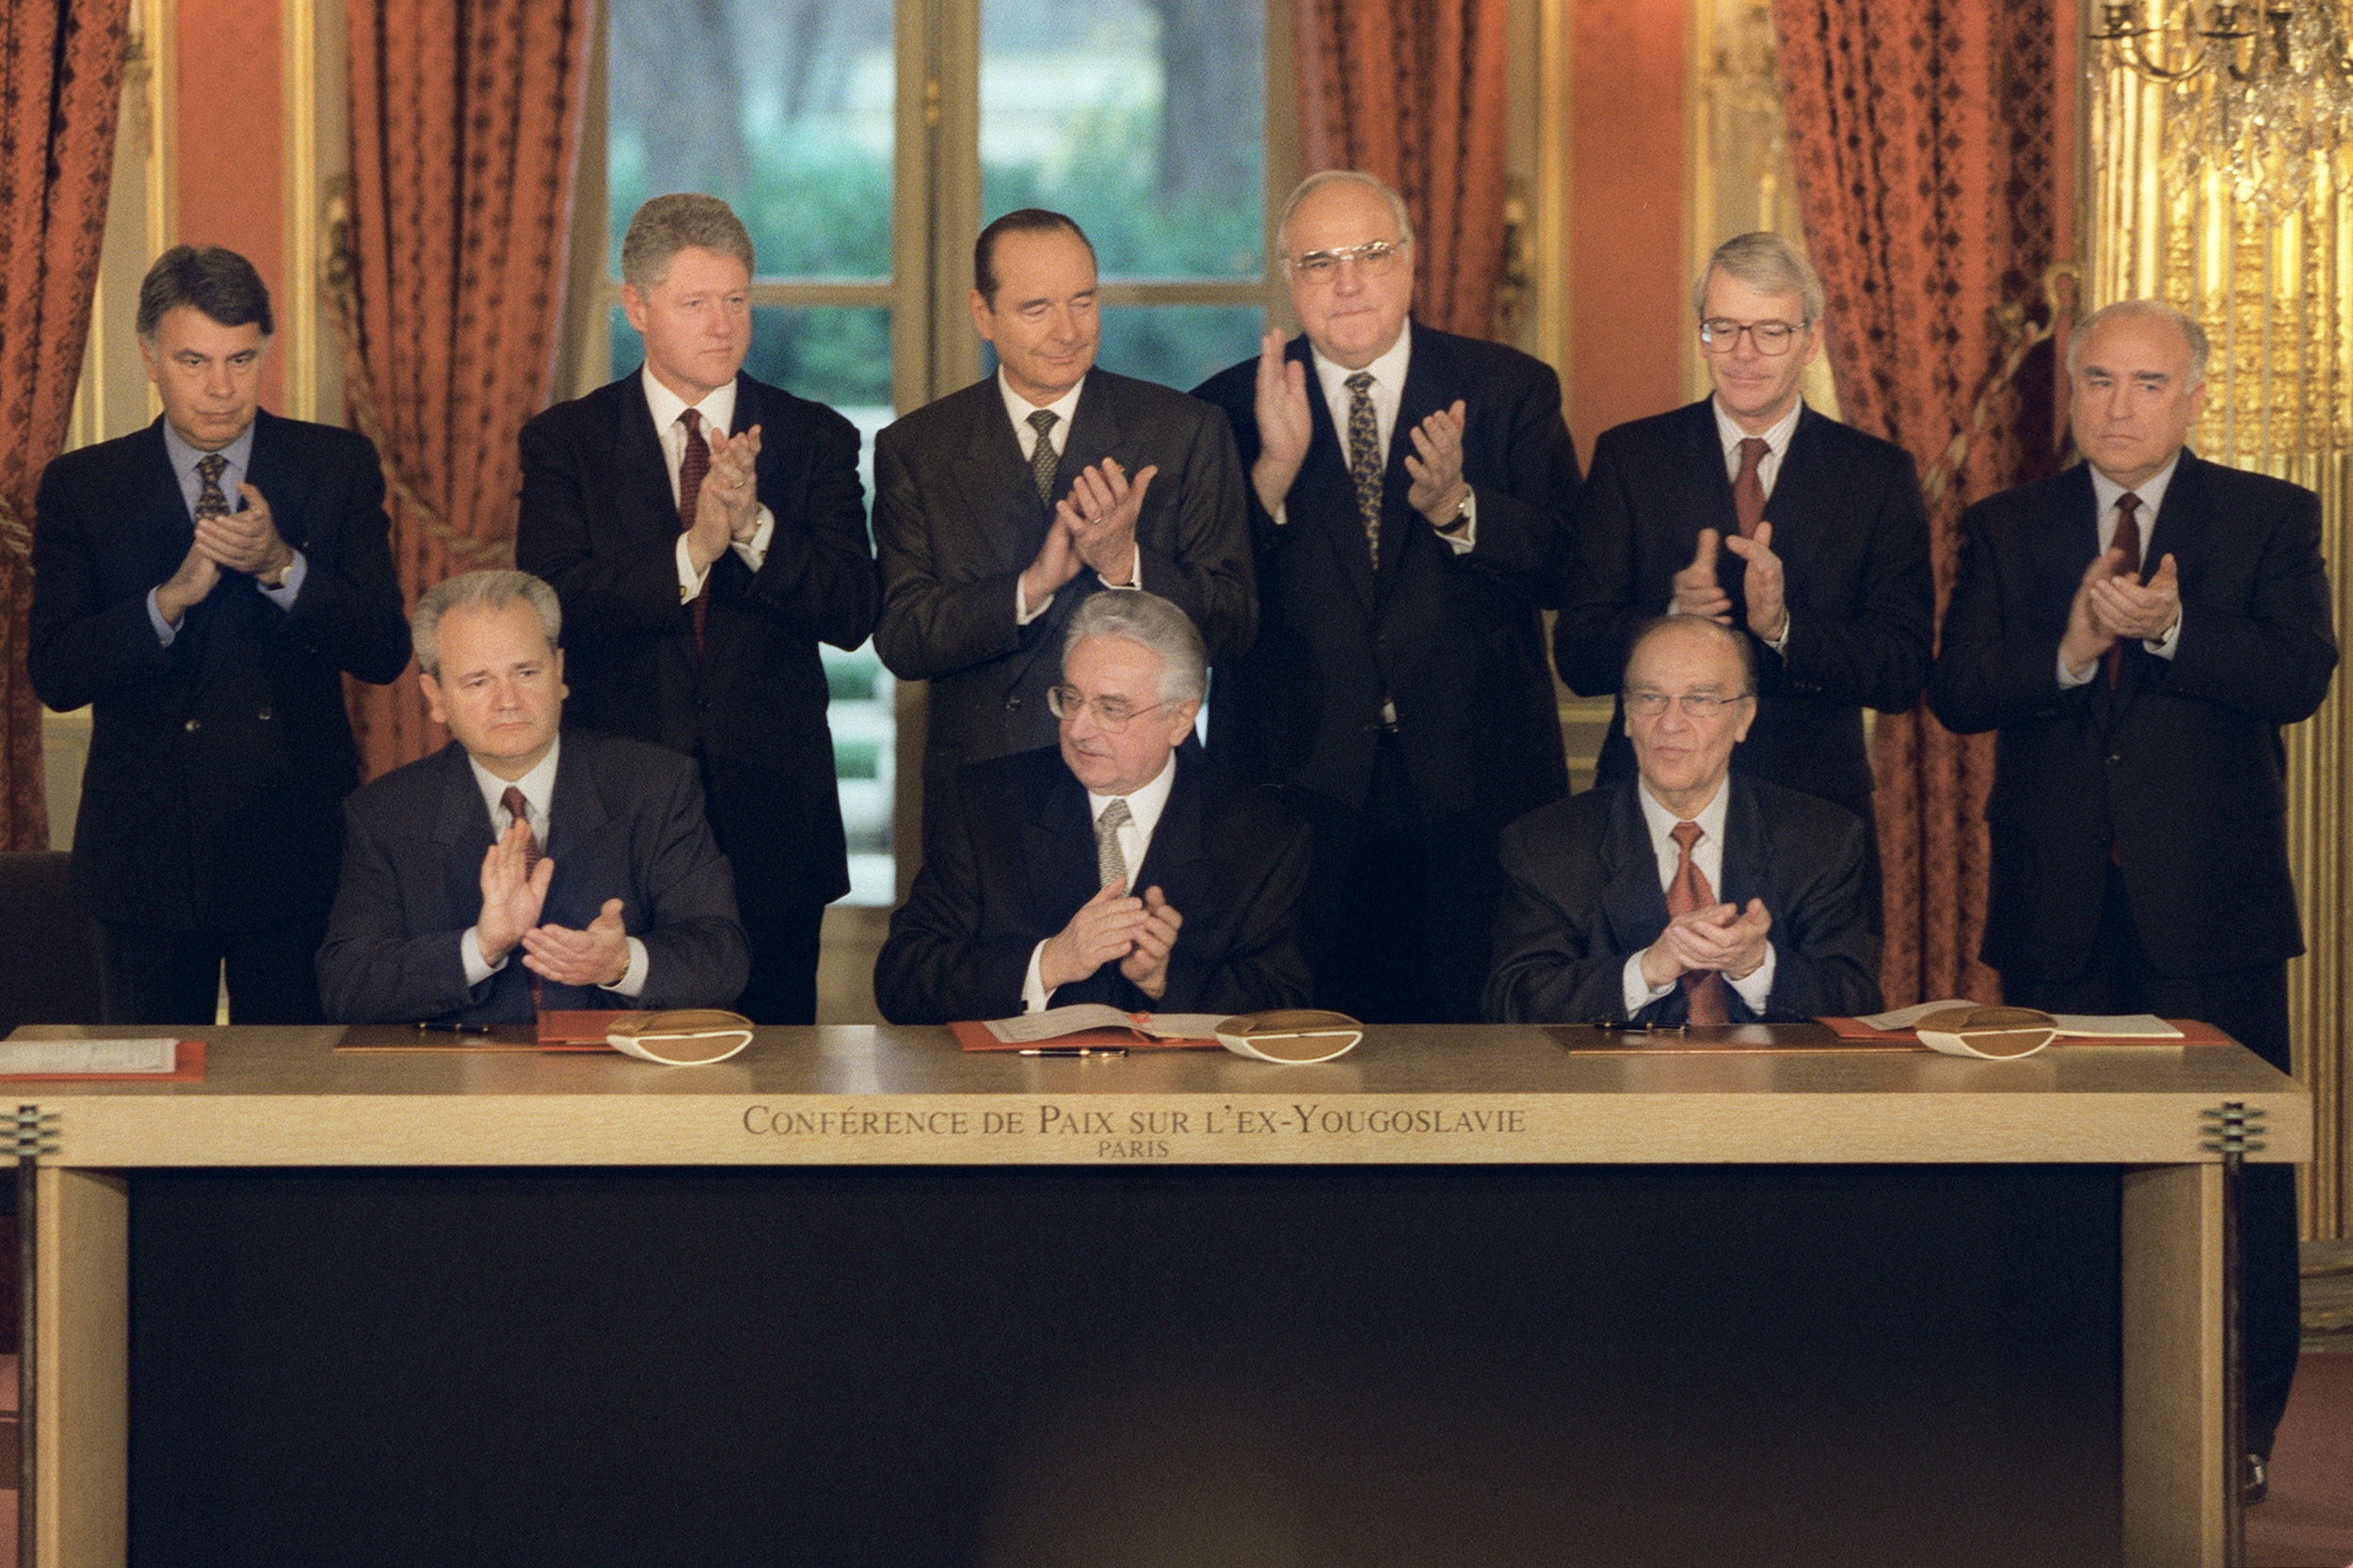 21 de noviembre de 1995 Finalizaban los Acuerdos de Dayton, que pondrían fin a la Guerra de los Bosnia